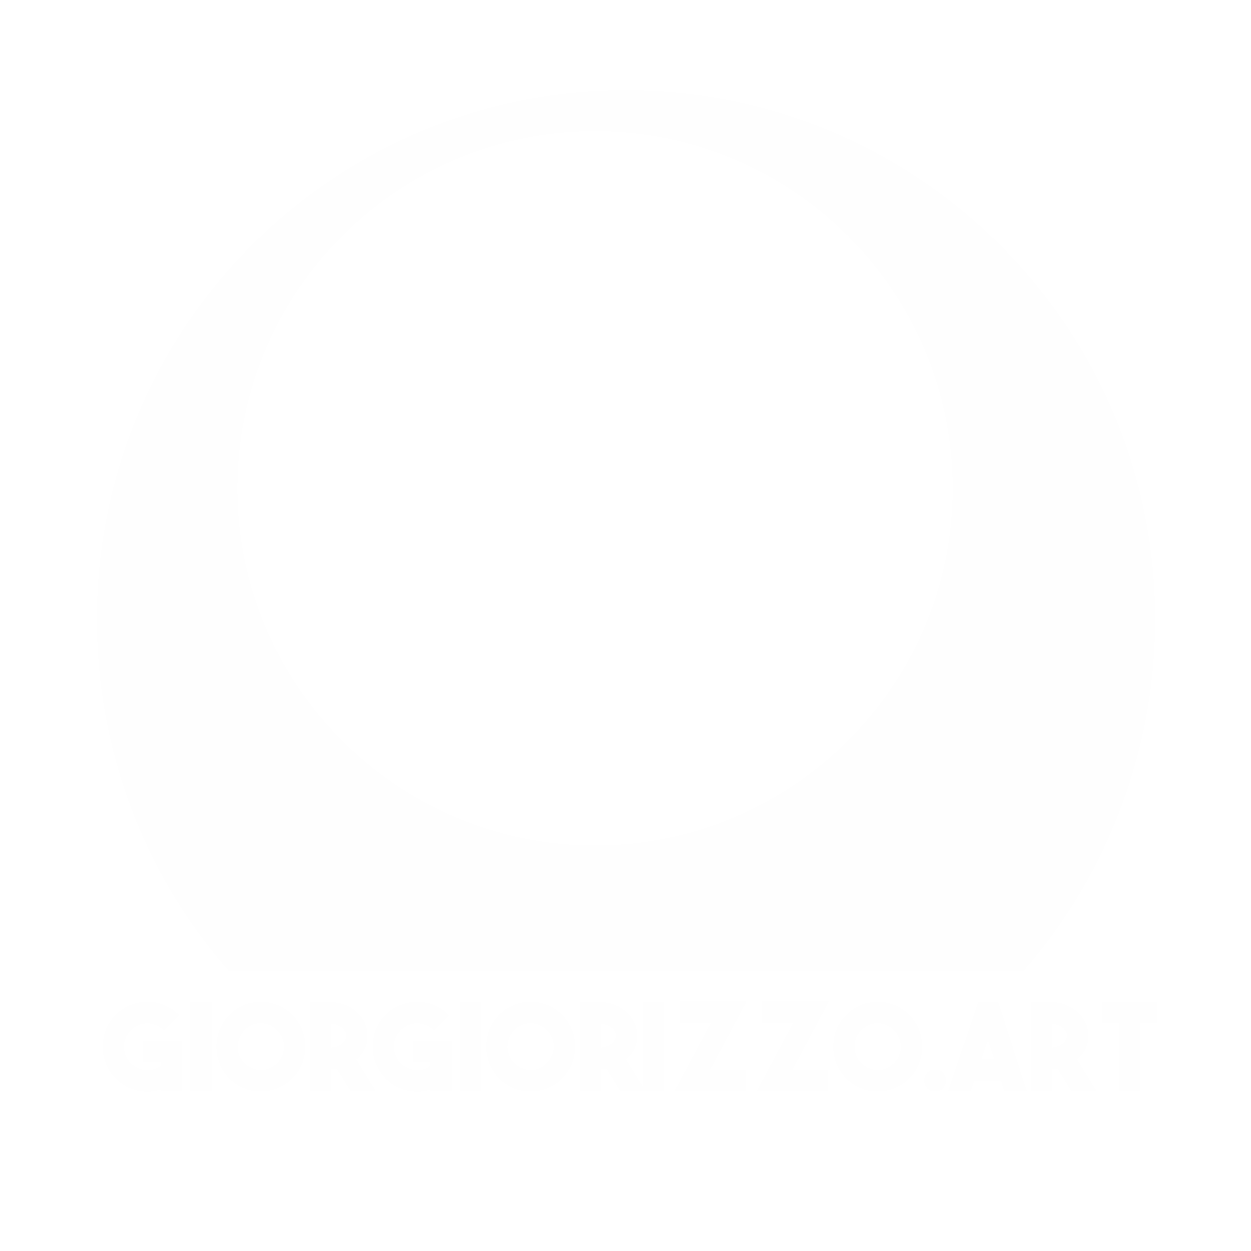 giorgiorizzo.art